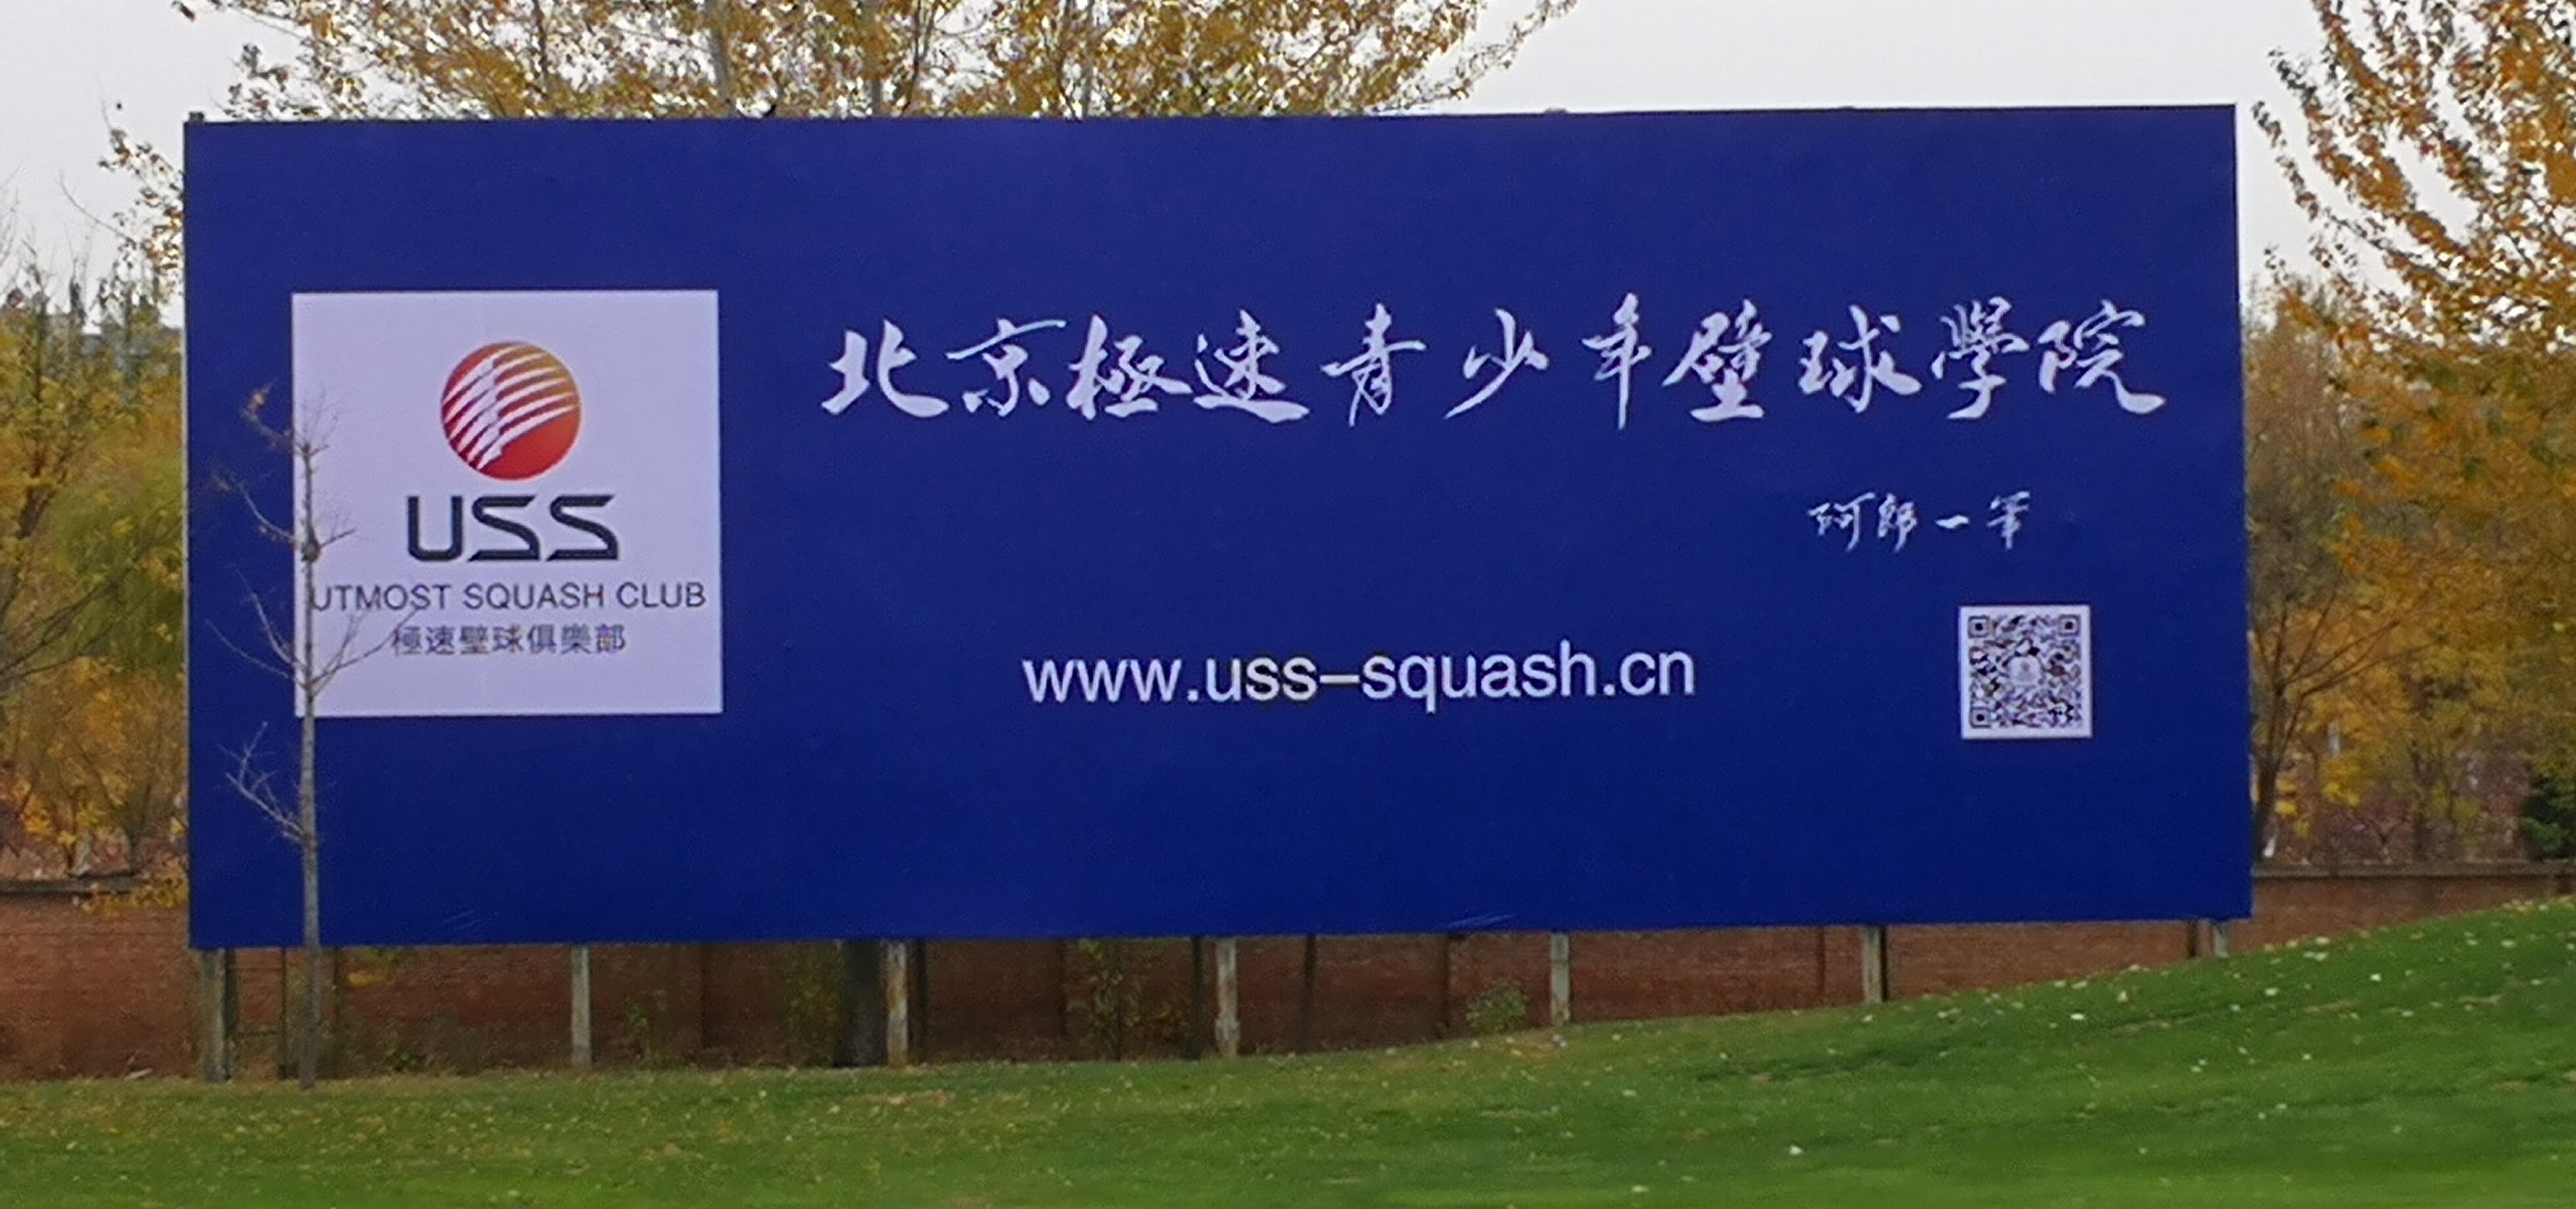 极速壁球俱乐部大型广告牌在北辰高尔夫球场搭建完成